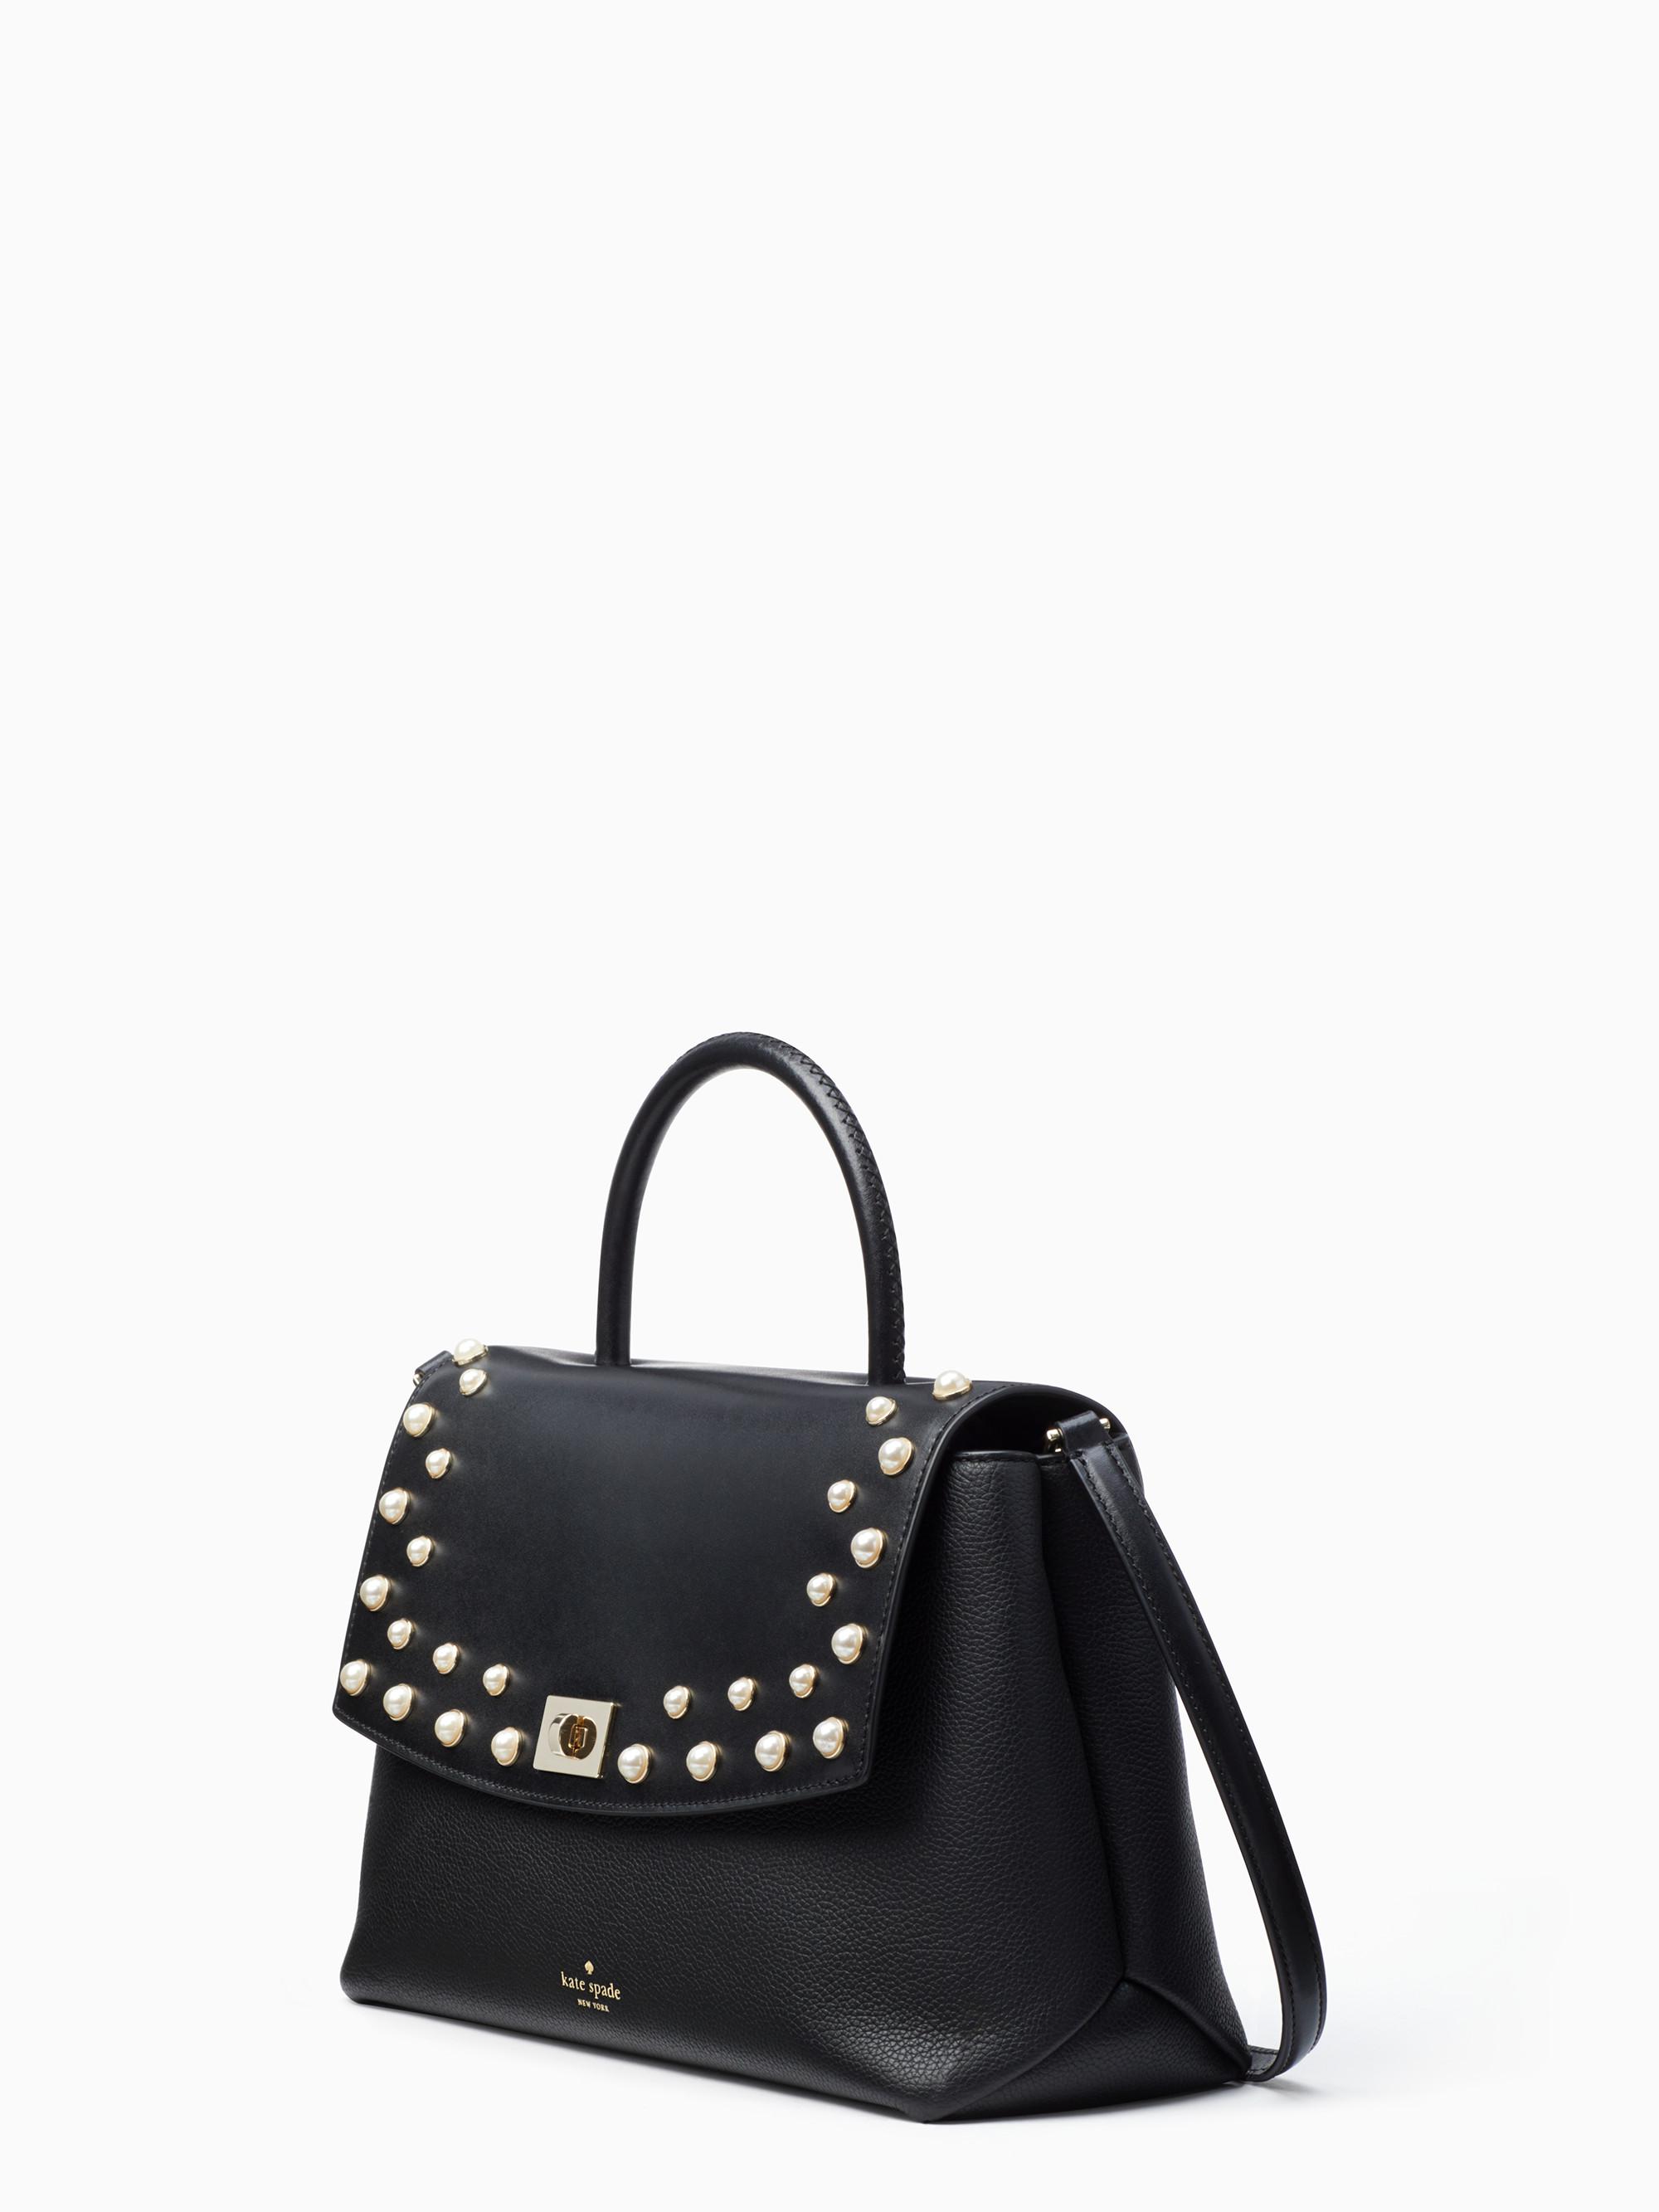 Kate Spade Black Bag With Pearls Top Sellers, SAVE 32% 